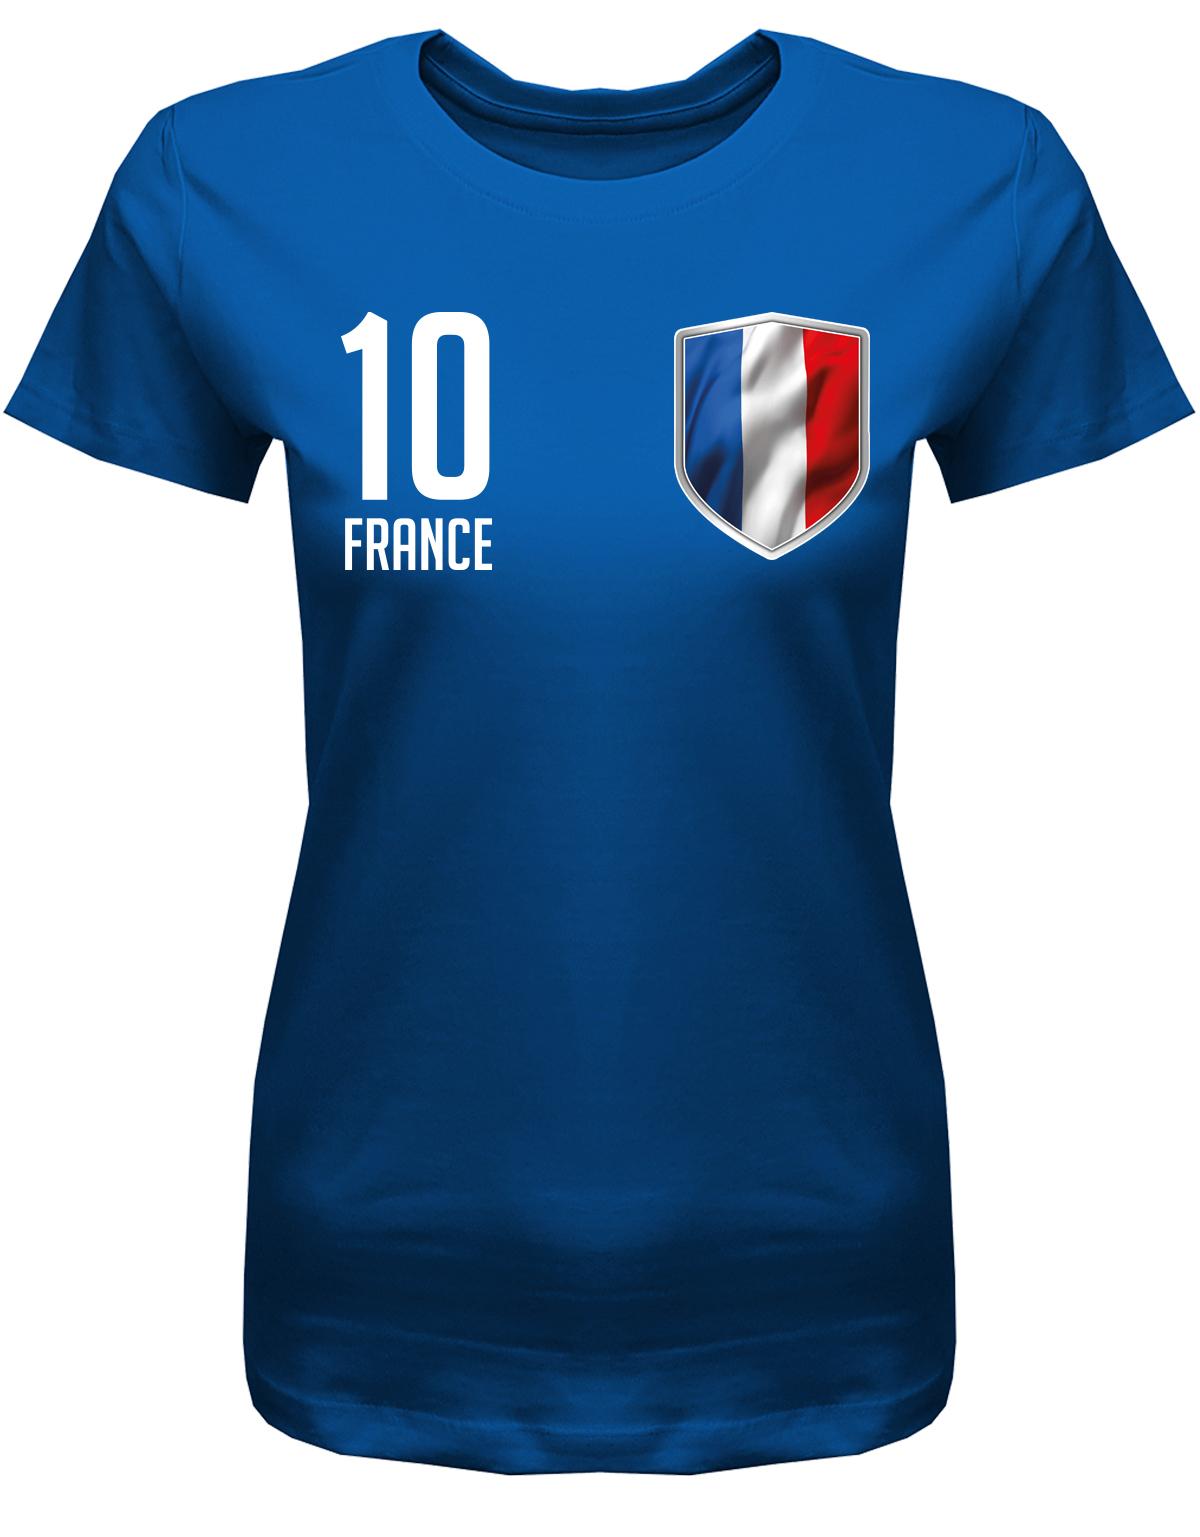 France-10-Damen-Shirt-Royalblau